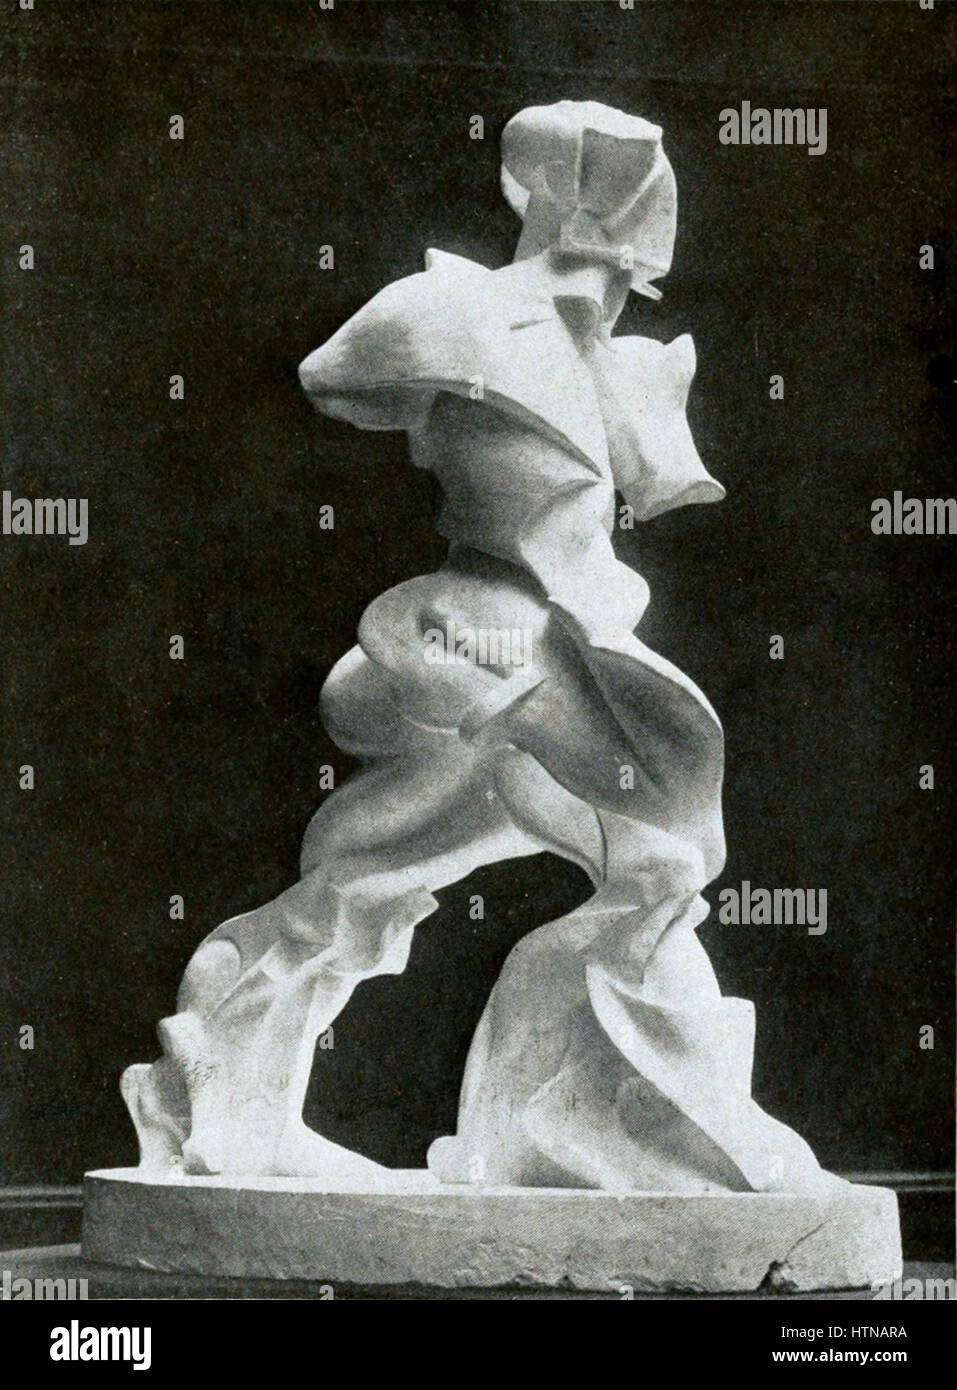 Umberto Boccioni, spirale l'expansion des muscles en action, de plâtre, d'une photographie publiée en 1914 Banque D'Images